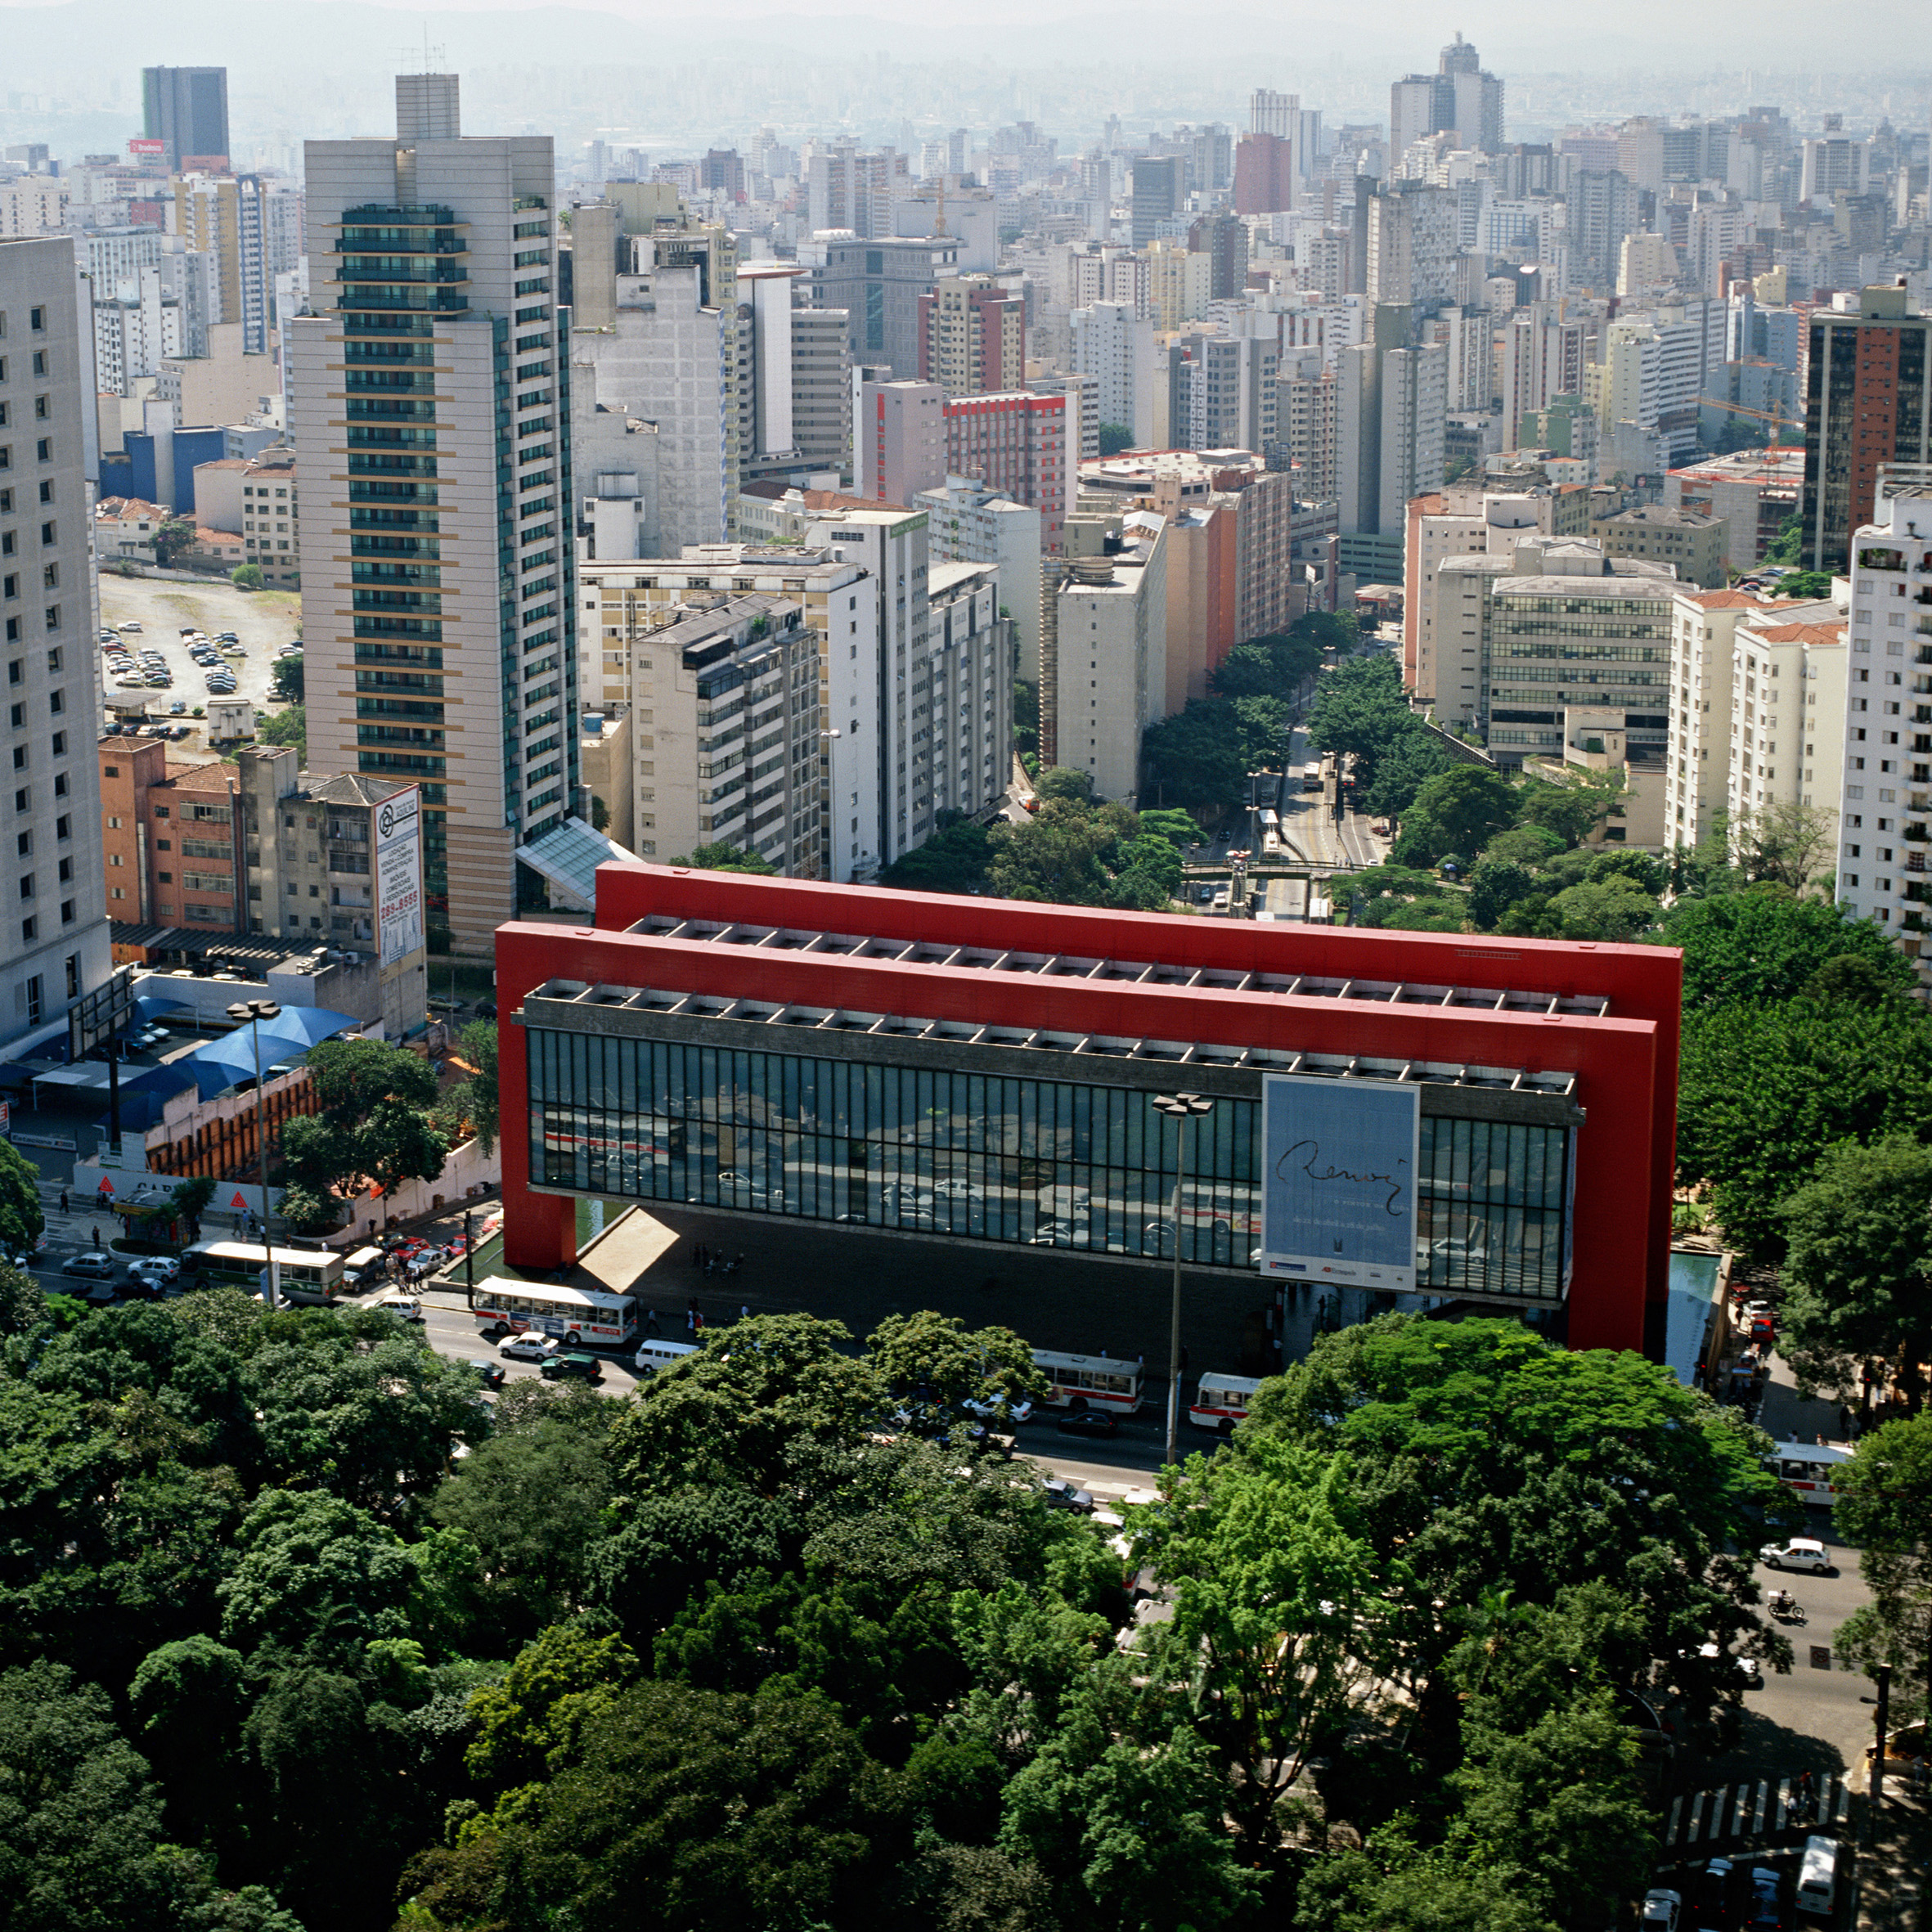 MASP – Museu de Arte de São Paulo, São Paulo, 1957-1968, fot. Nelson Kon, 2002